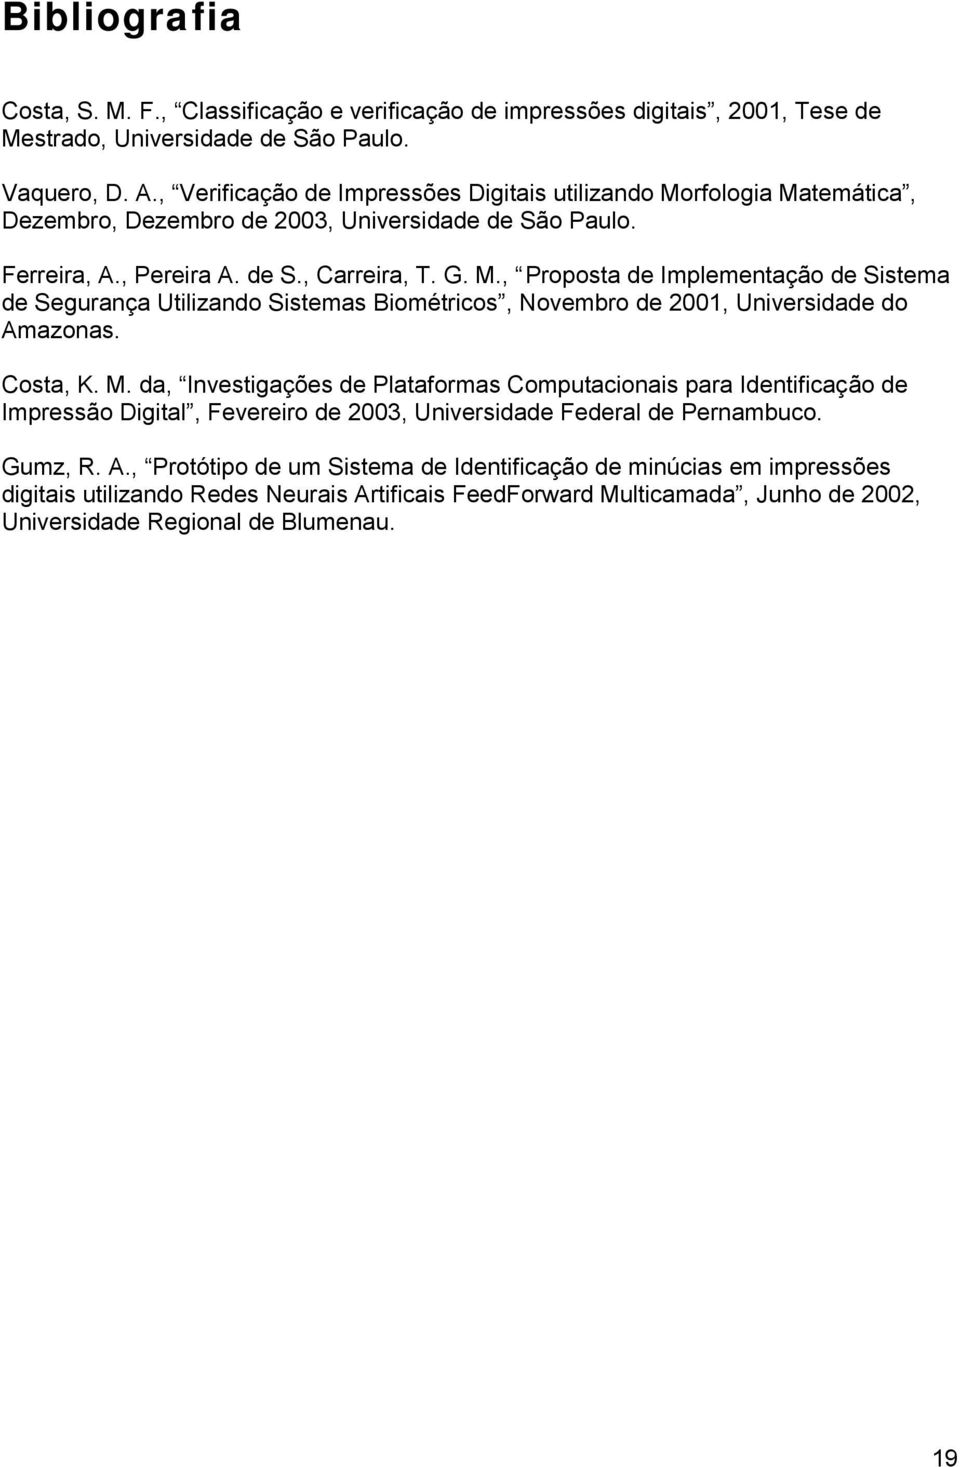 Costa, K. M. da, Investigações de Plataformas Computacionais para Identificação de Impressão Digital, Fevereiro de 2003, Universidade Federal de Pernambuco. Gumz, R. A.